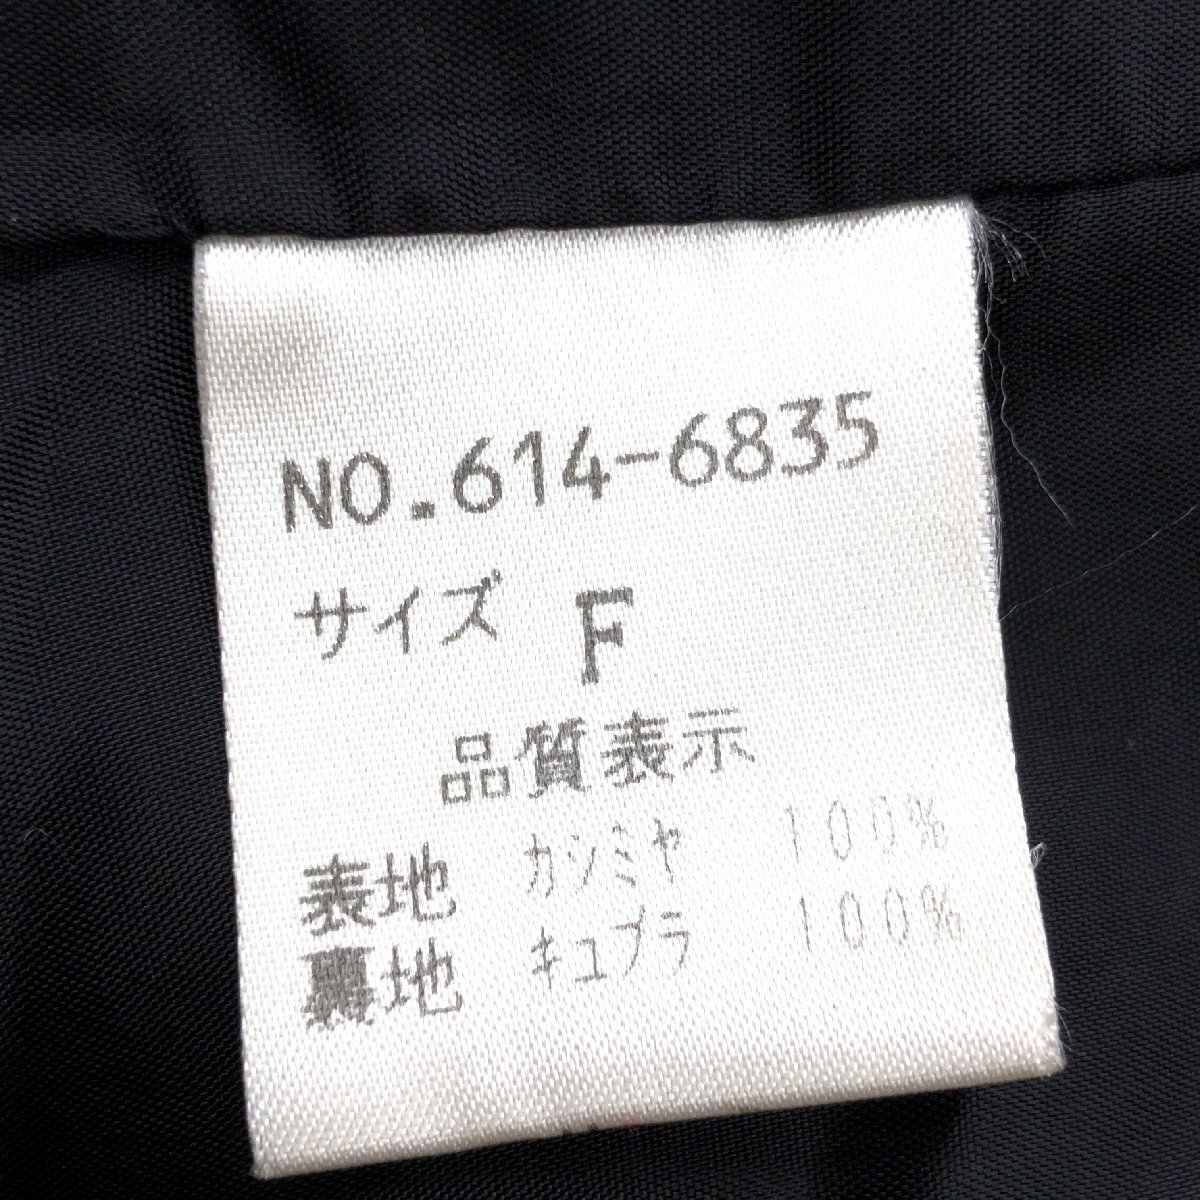 ◆mallage マロージュ 高級カシミヤ100% ロングコート F 黒 ブラック ウールコート カシミア 日本製 国内正規品 レディース 女性用 婦人の画像8